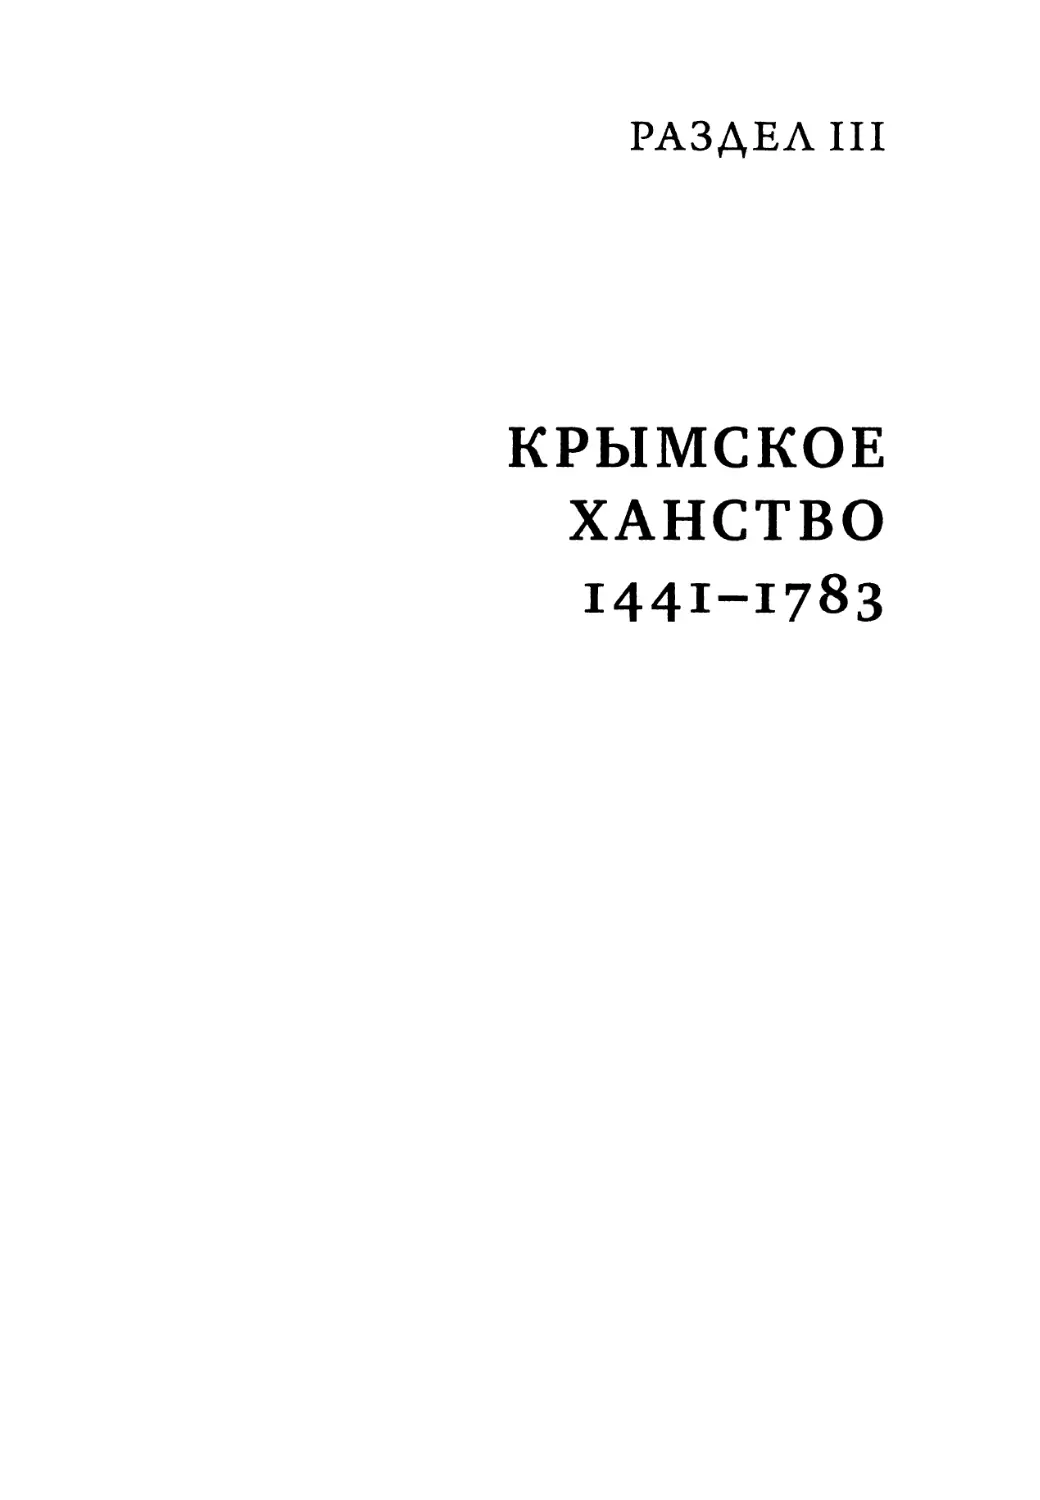 Раздел III. Крымское ханство. 1441-1783 гг